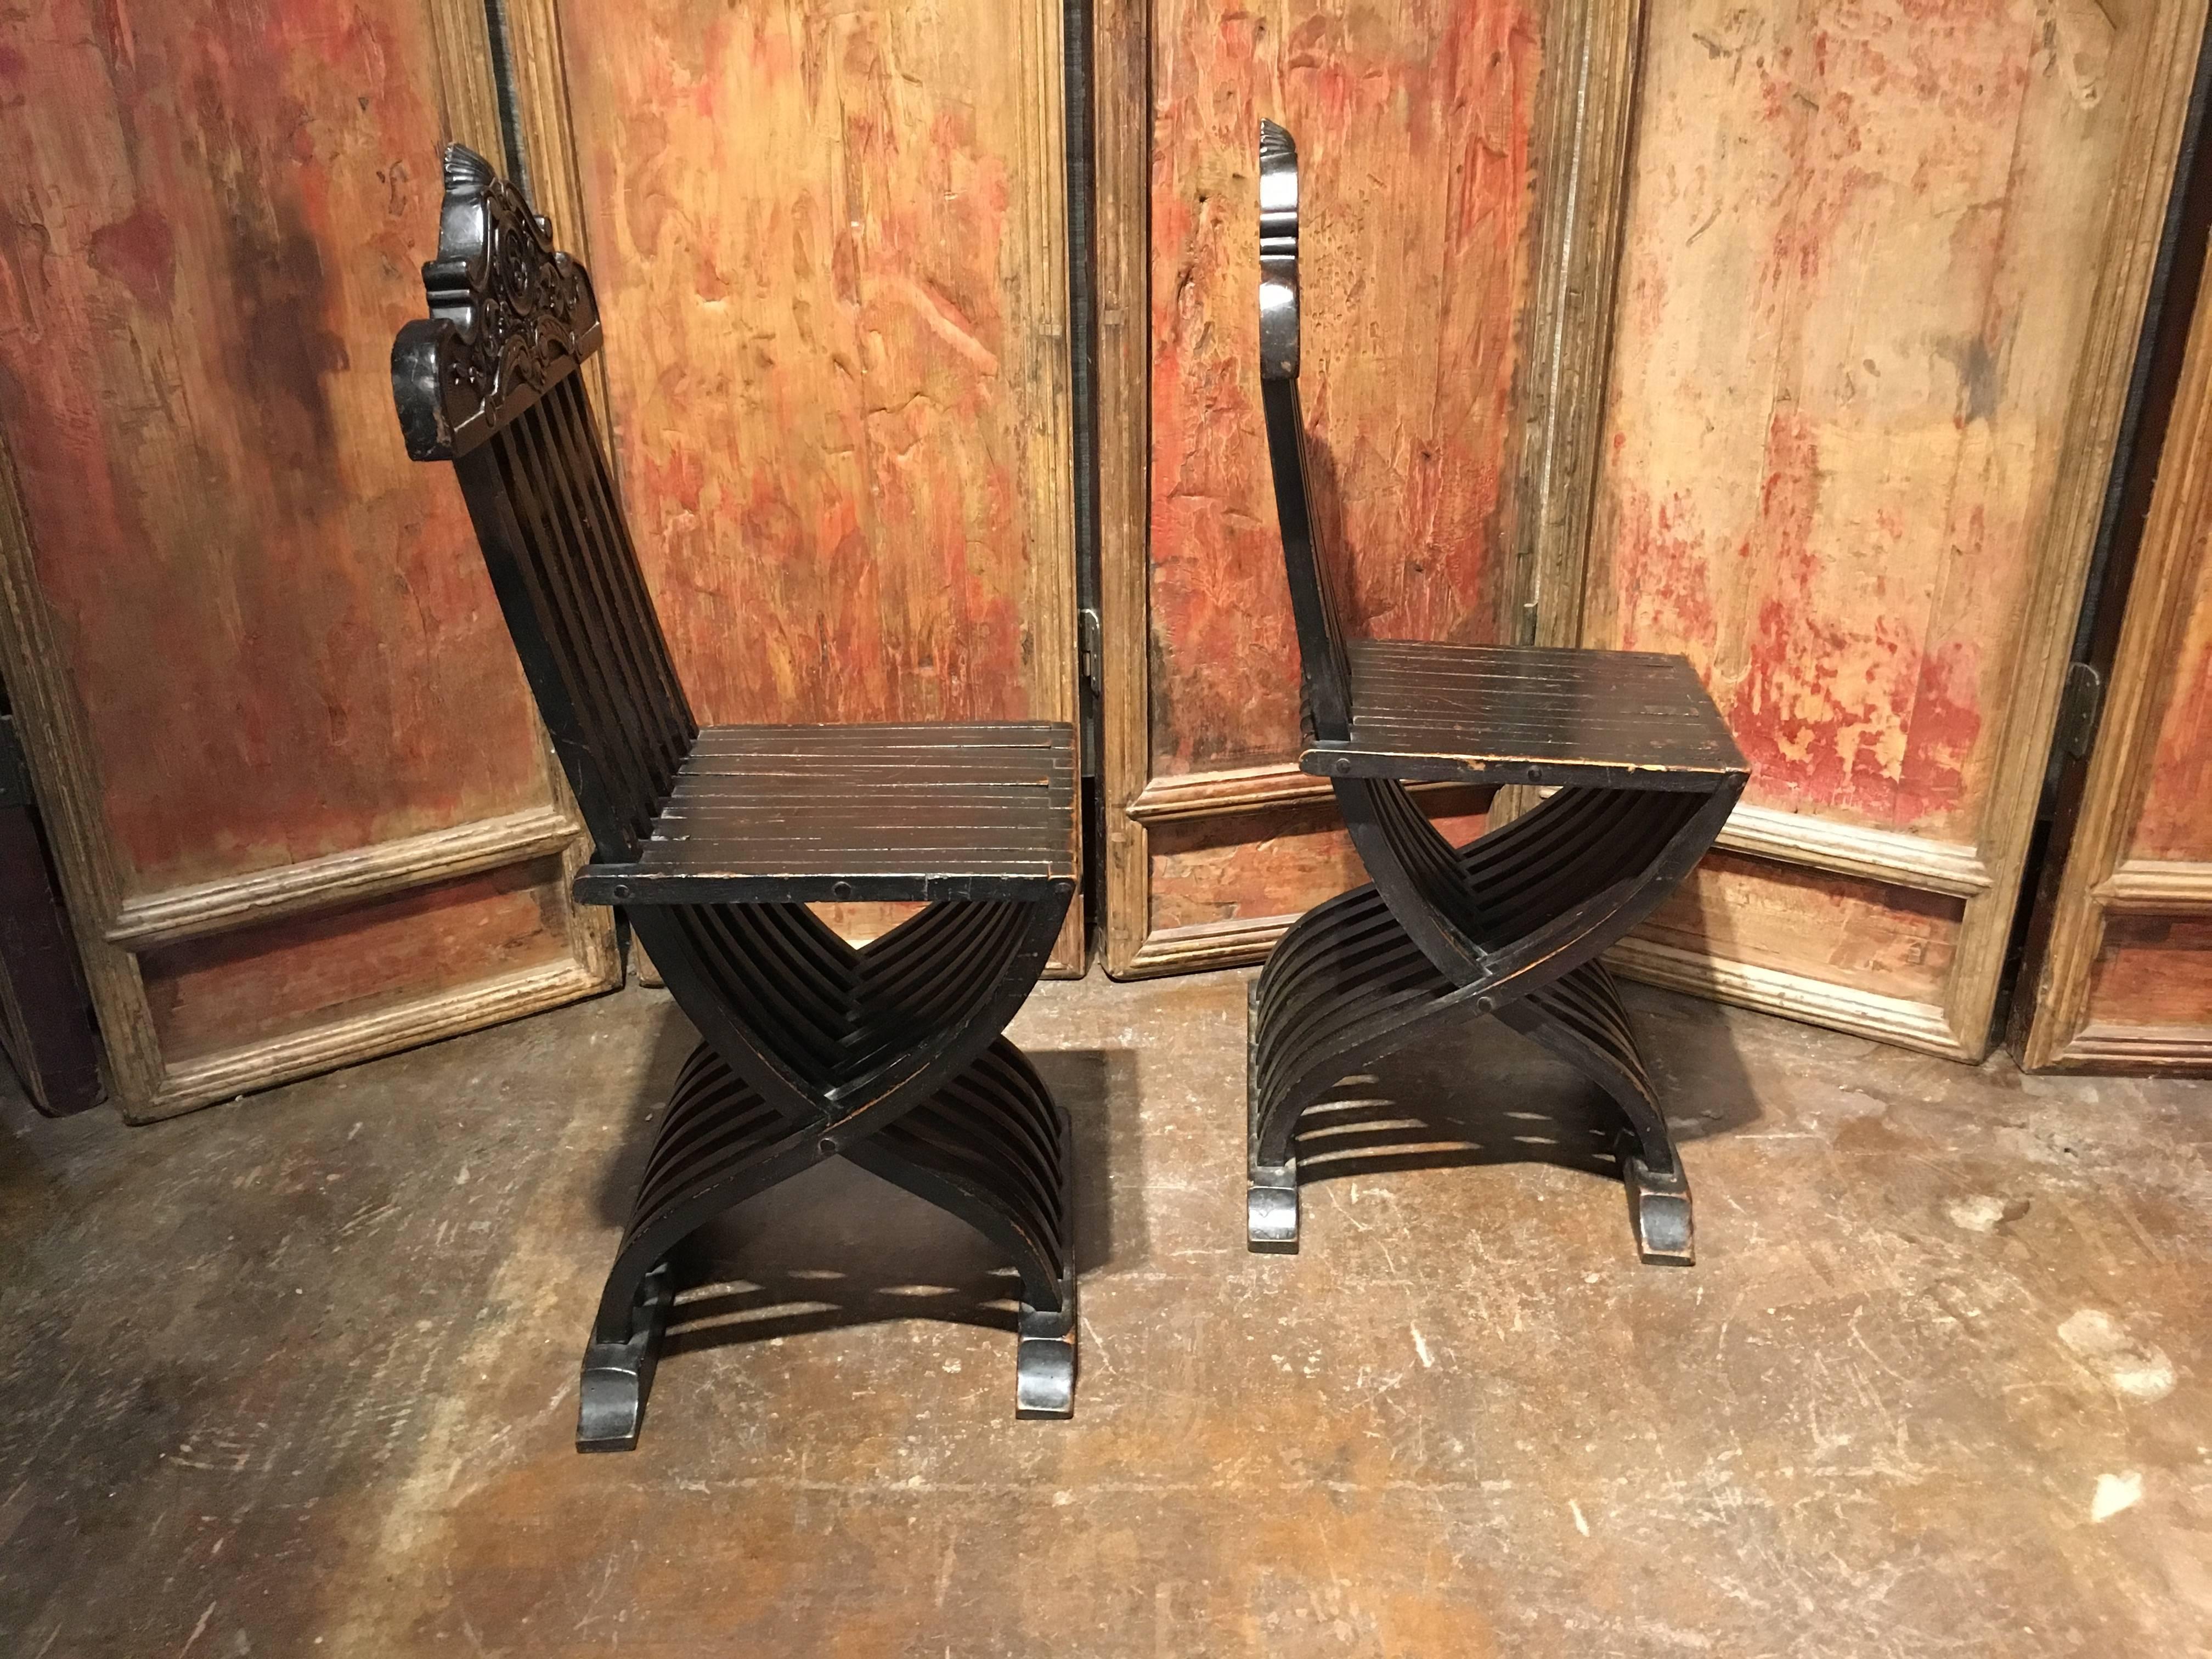 Une belle paire de chaises italiennes en bois ébénisé du 19ème siècle. Les chaises de forme séduisante, avec des pieds et un dossier à lattes. Les pieds d'une forme curviligne en 